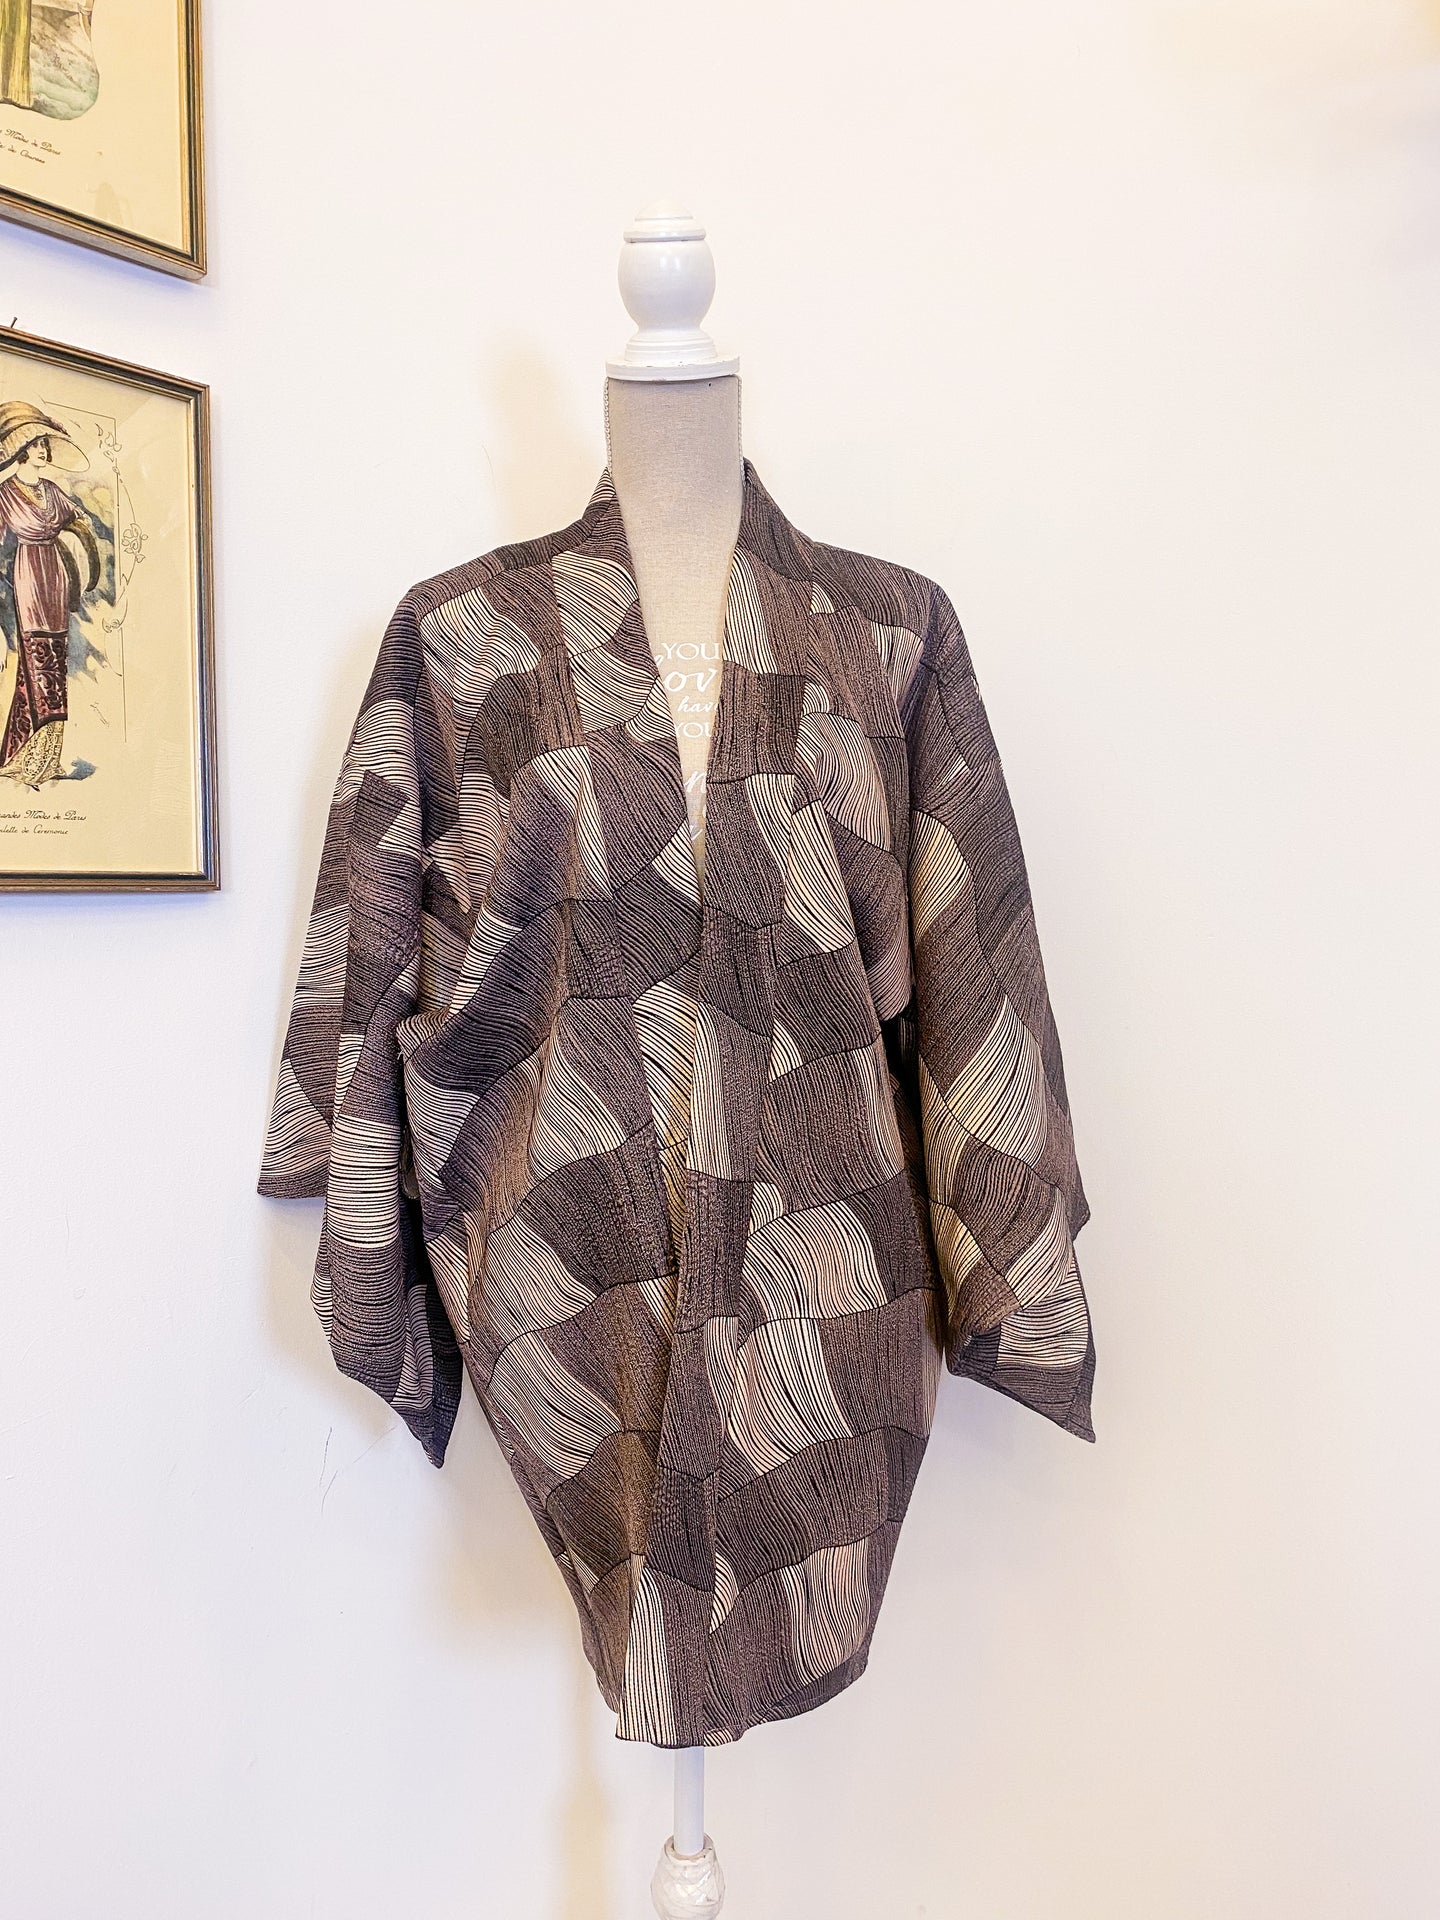 Kimono - One size